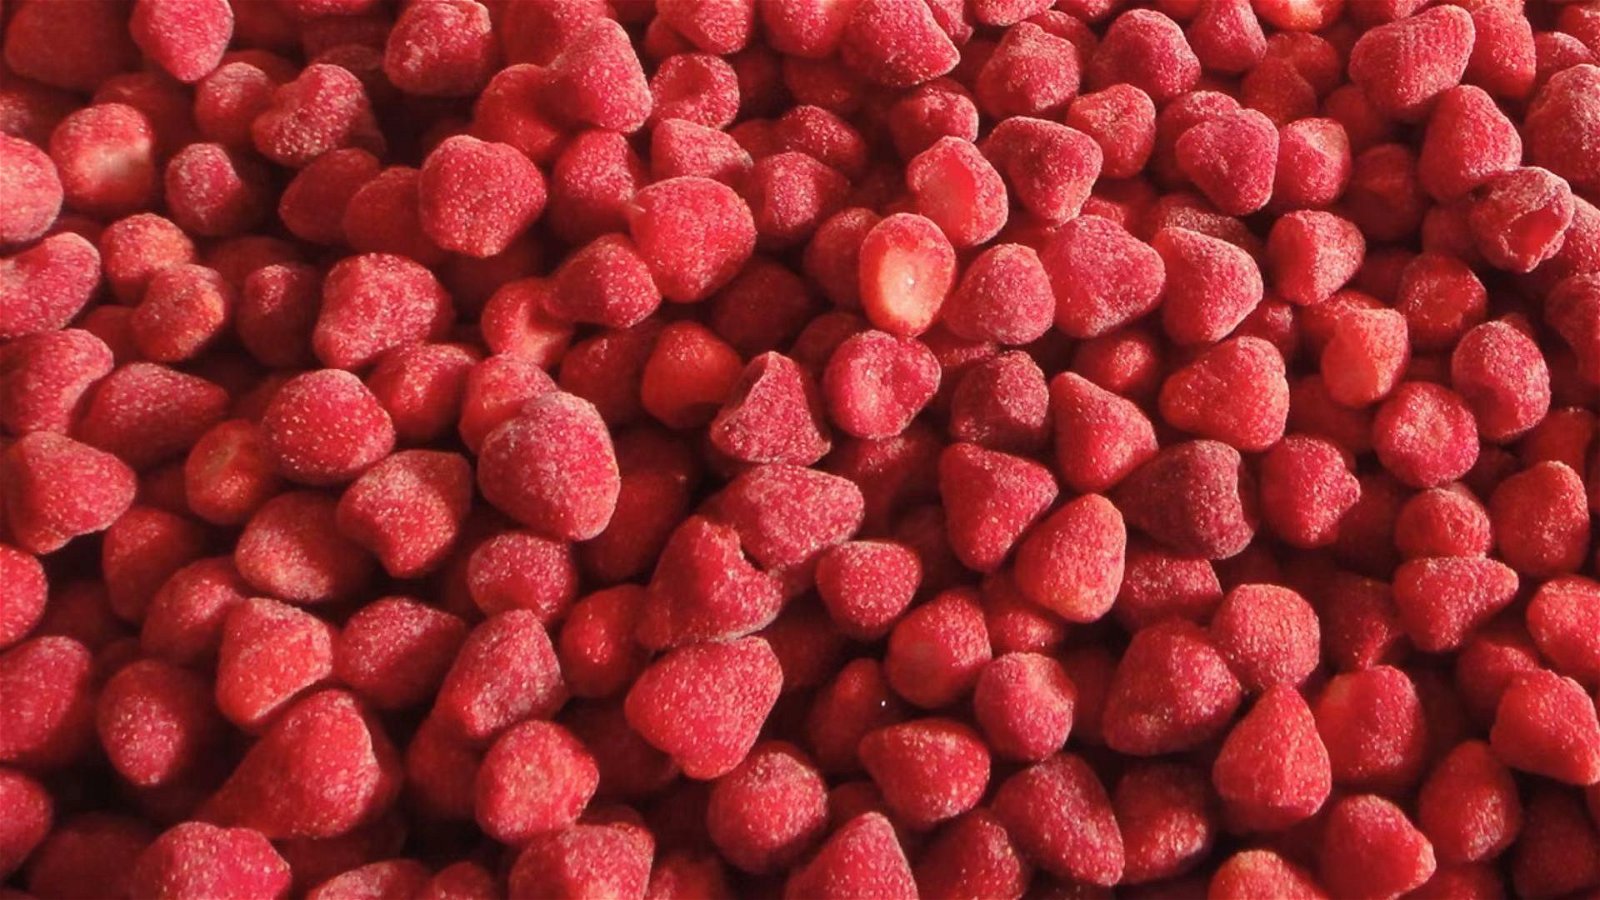 冷凍草莓,速凍草莓,冷凍草莓泥,速凍草莓泥